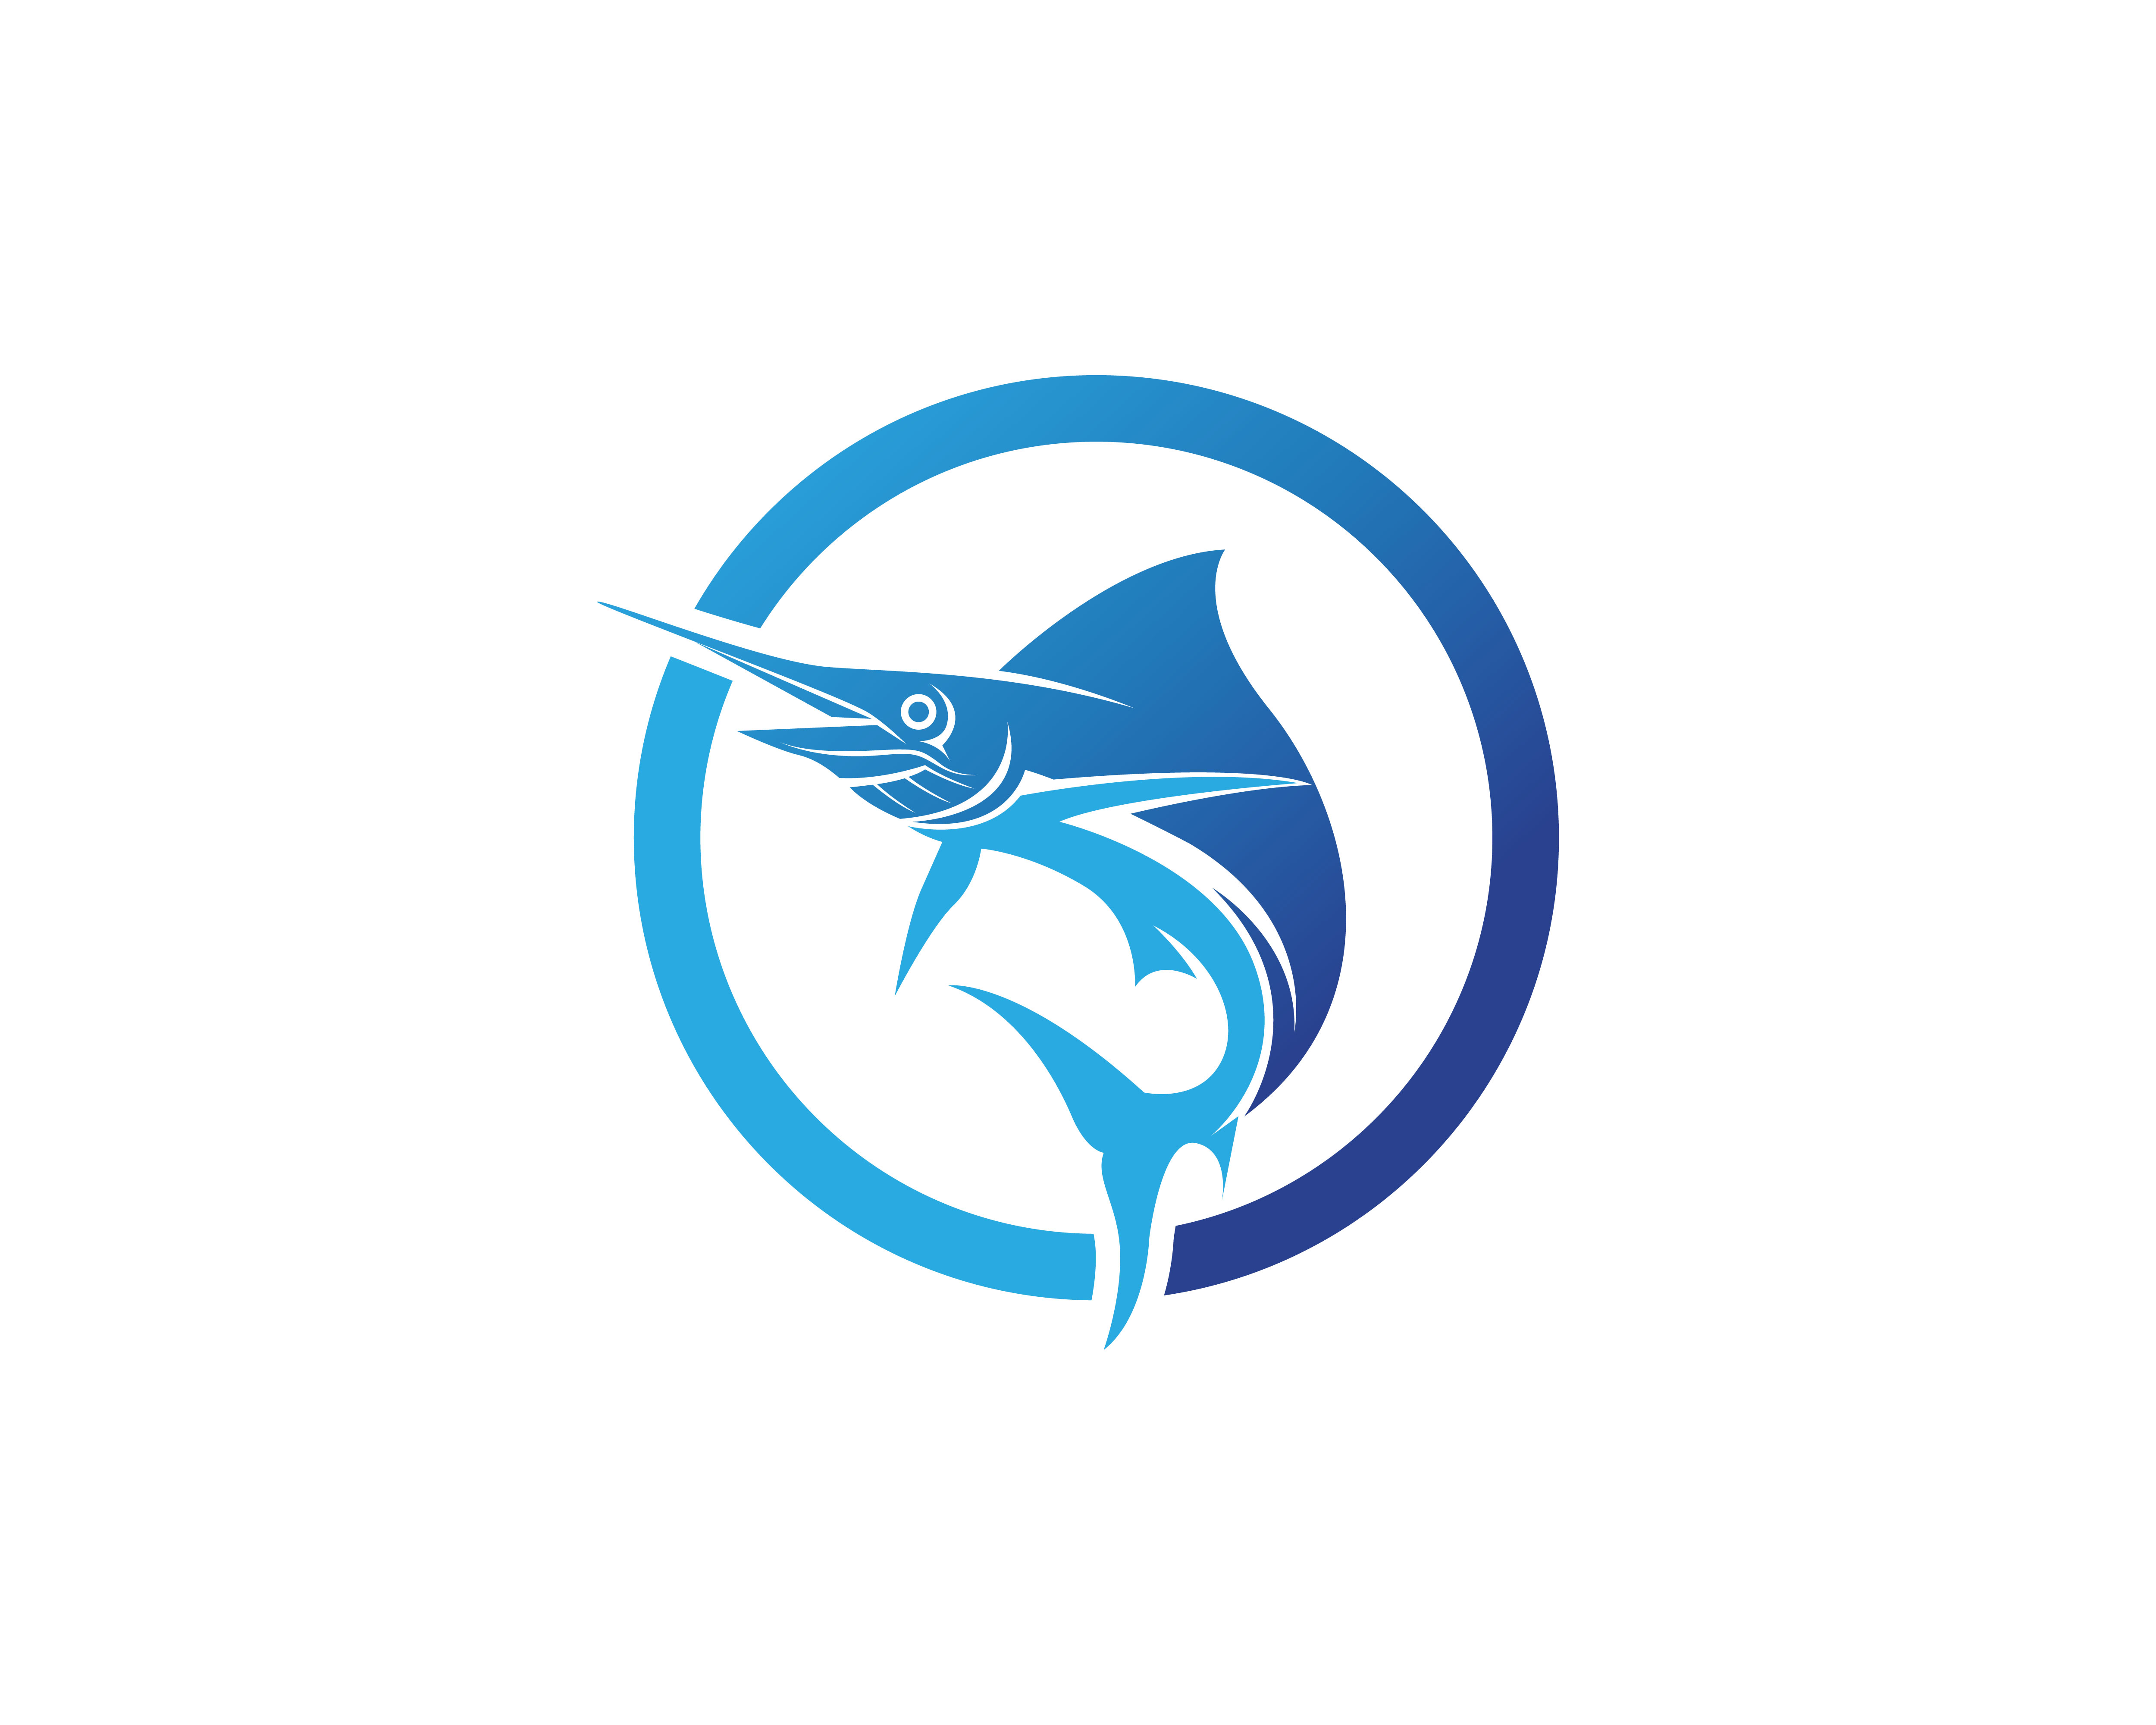 Marlin jump fish logo and symbols icon 585488 Vector Art